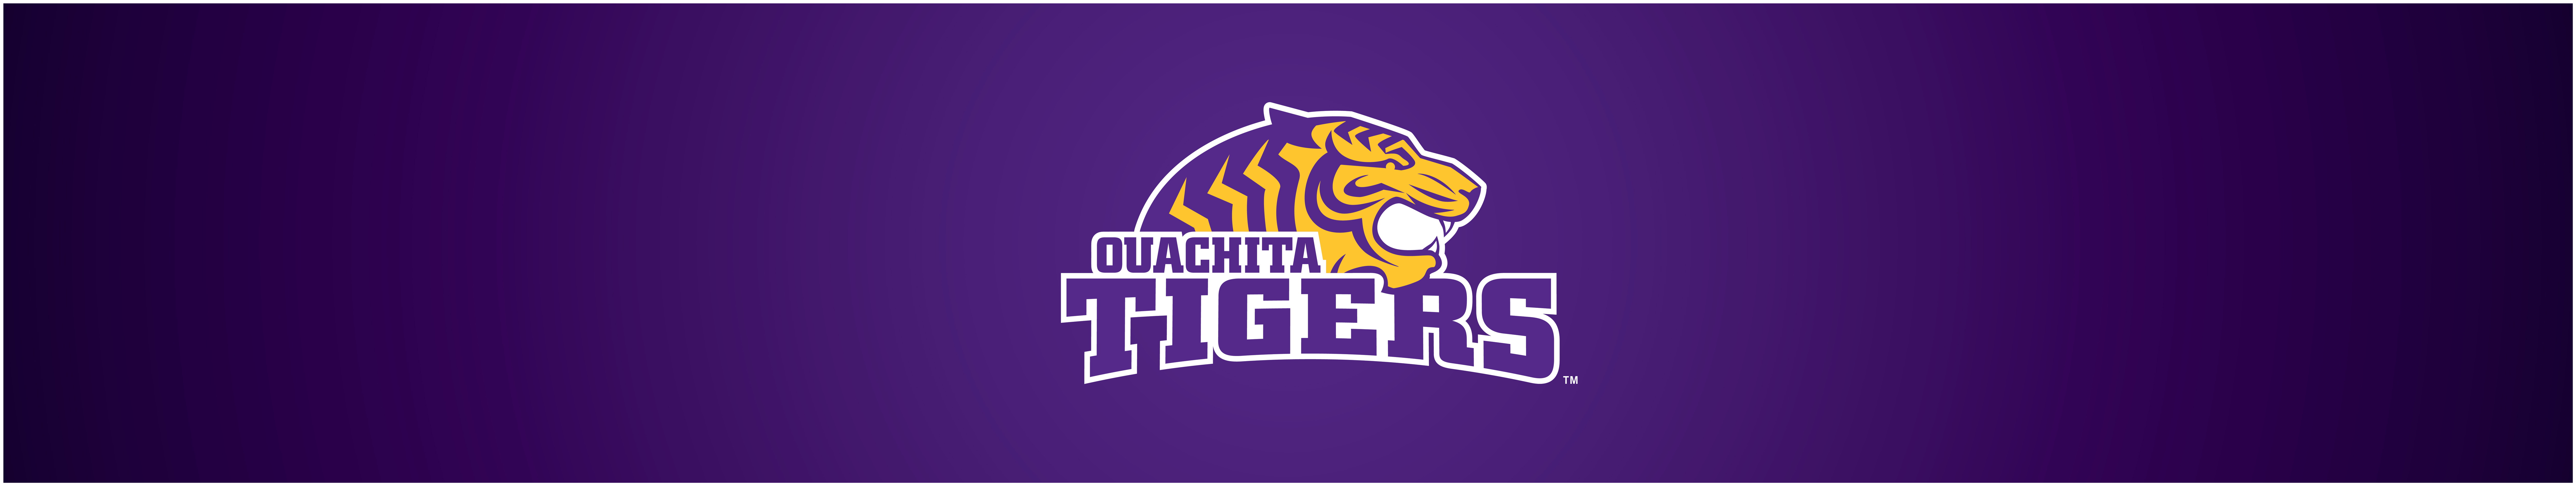 Ouachita unveils updated athletics branding initiative.